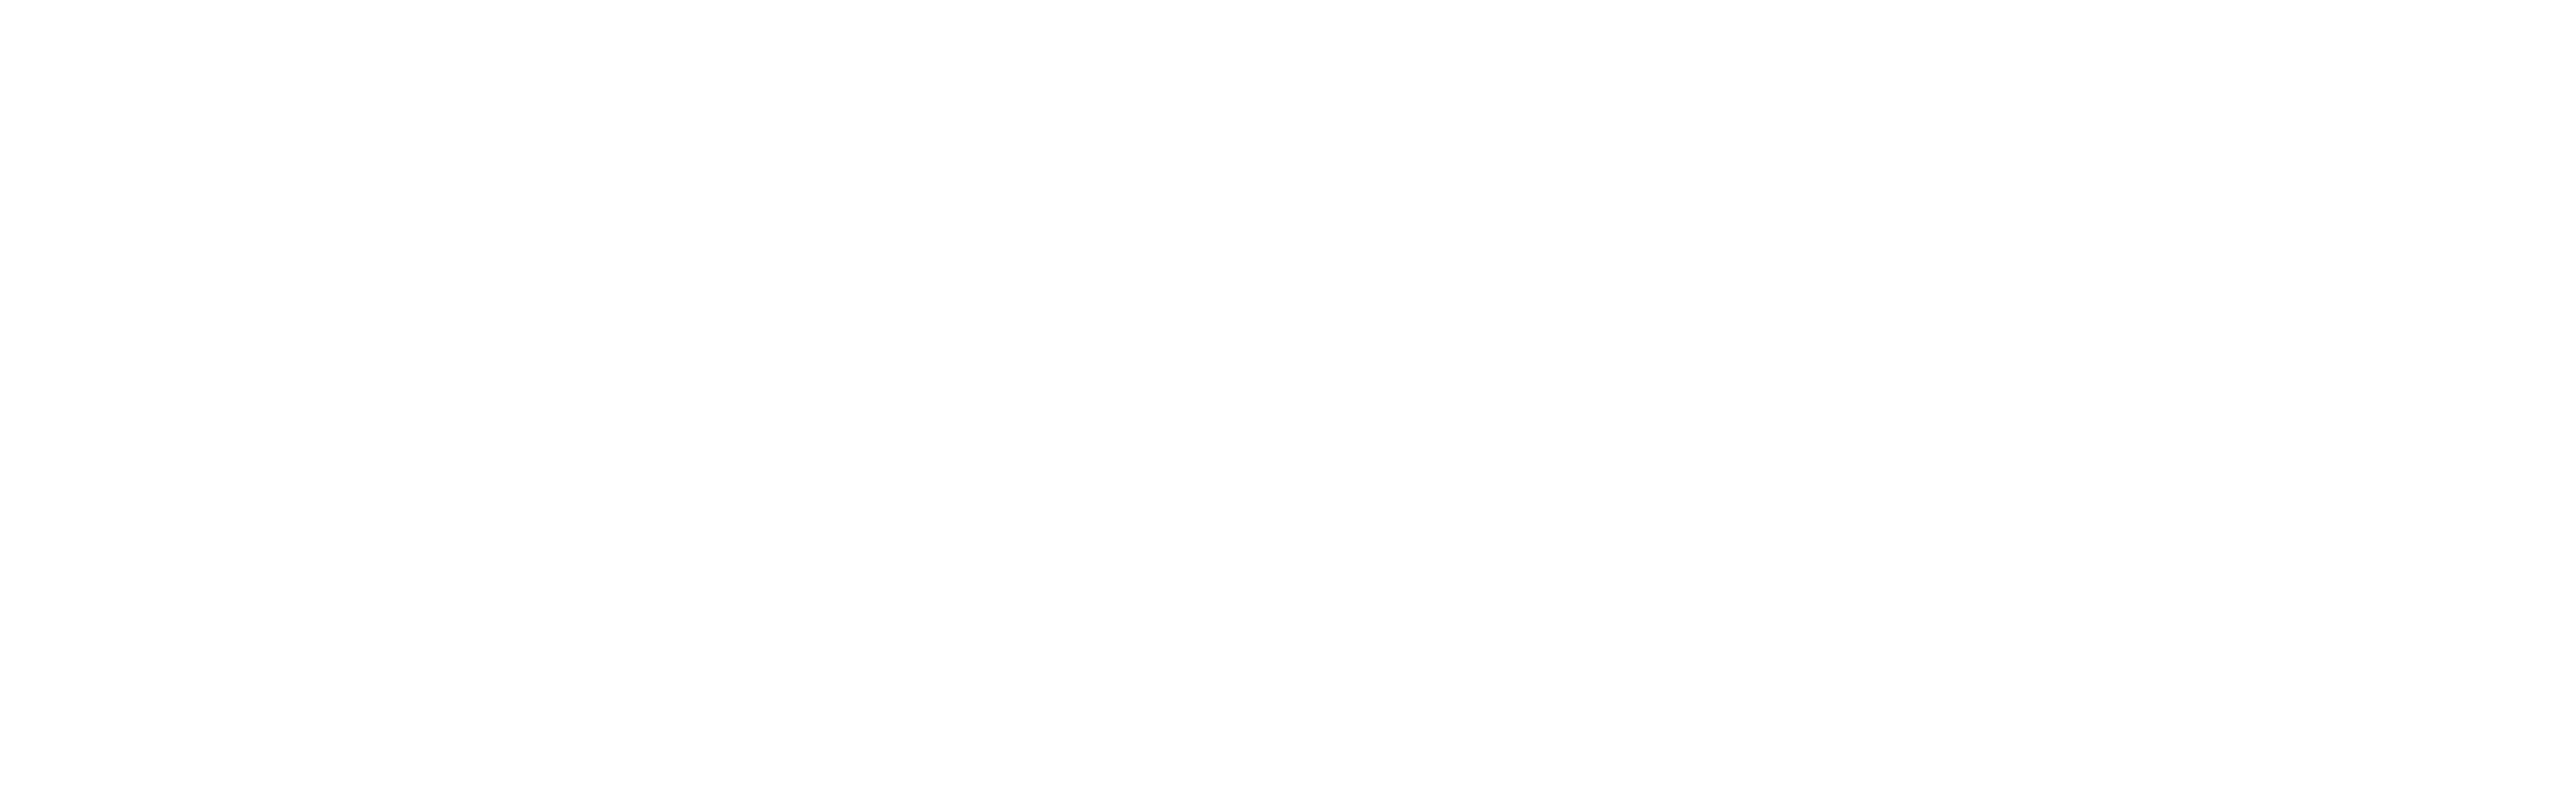 MetaCTF